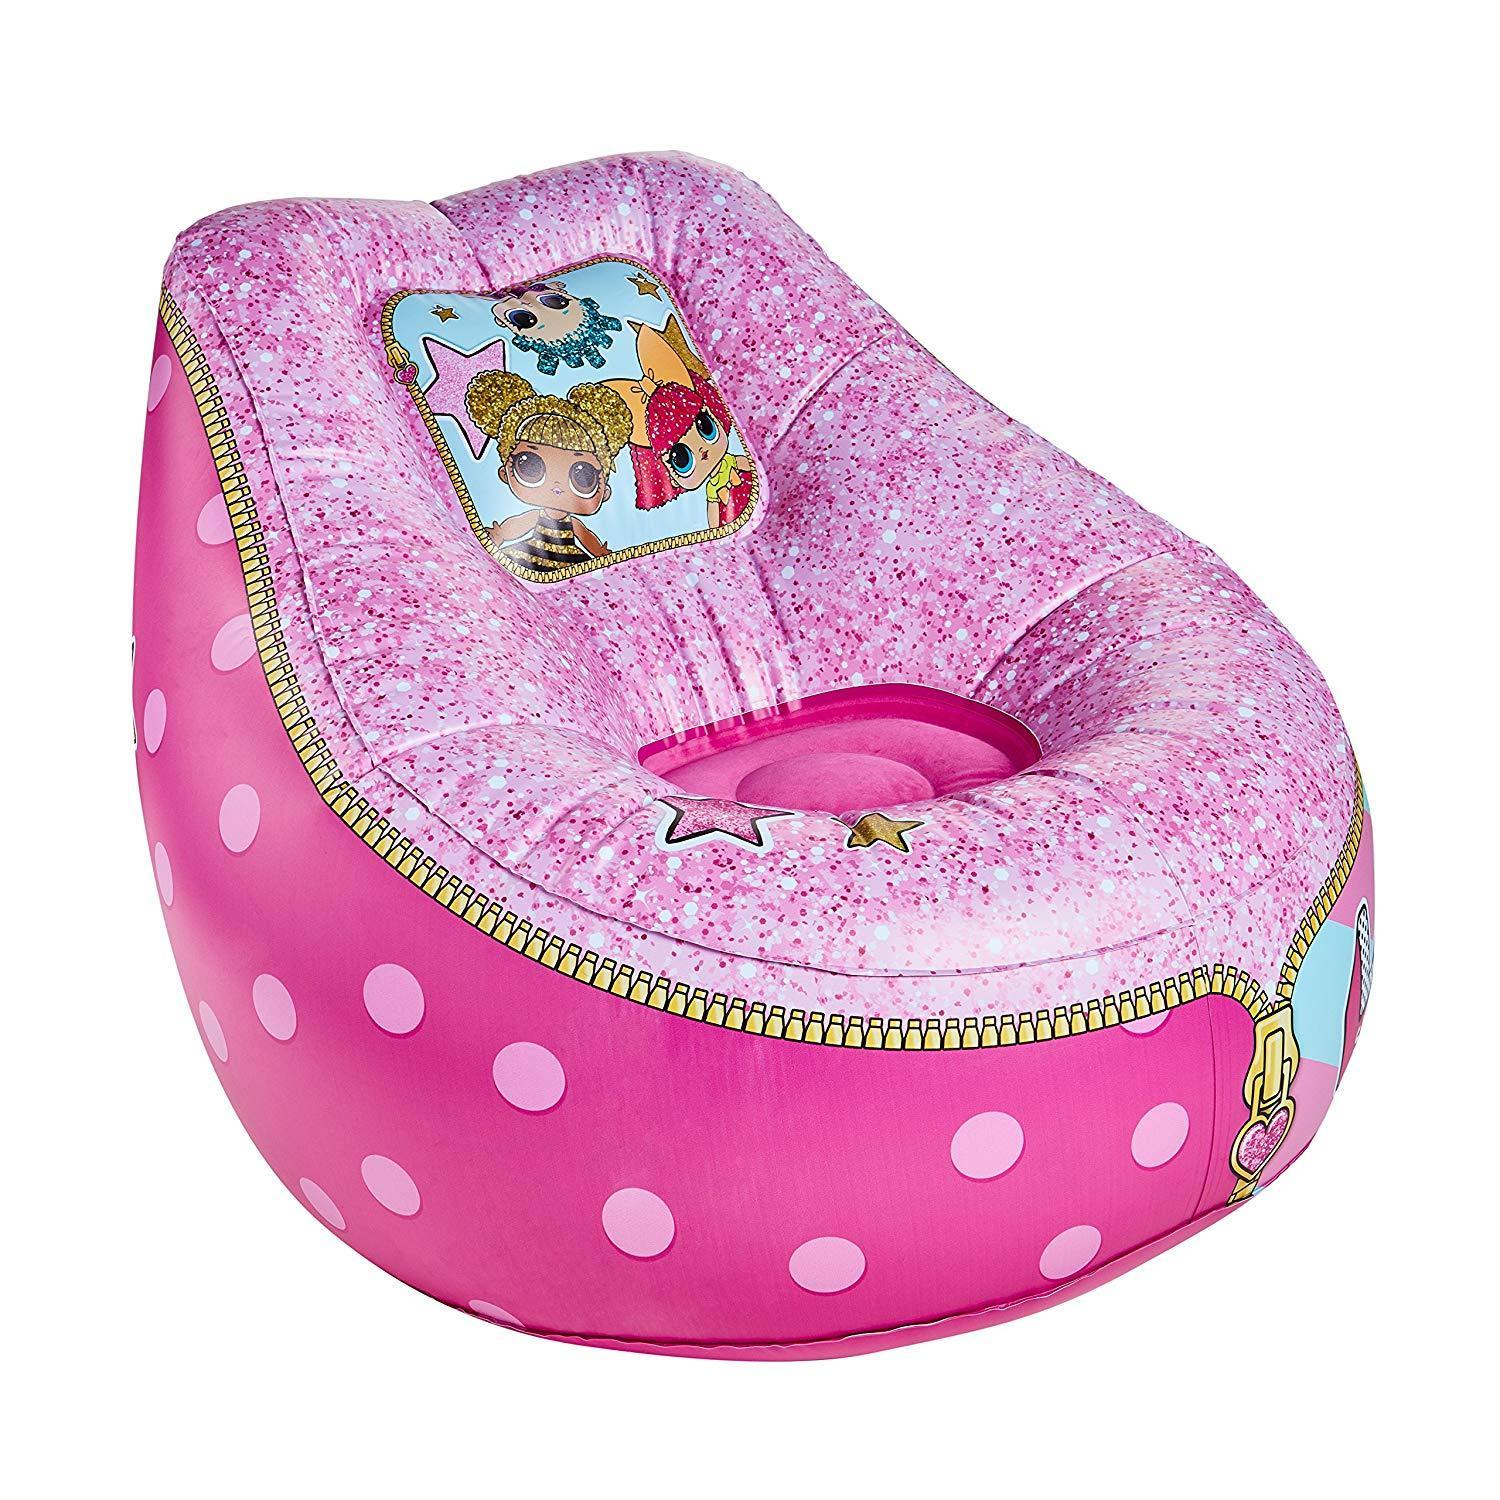 LOL Surprise - Cadeira Inflável para Crianças Anne Claire Baby Store 